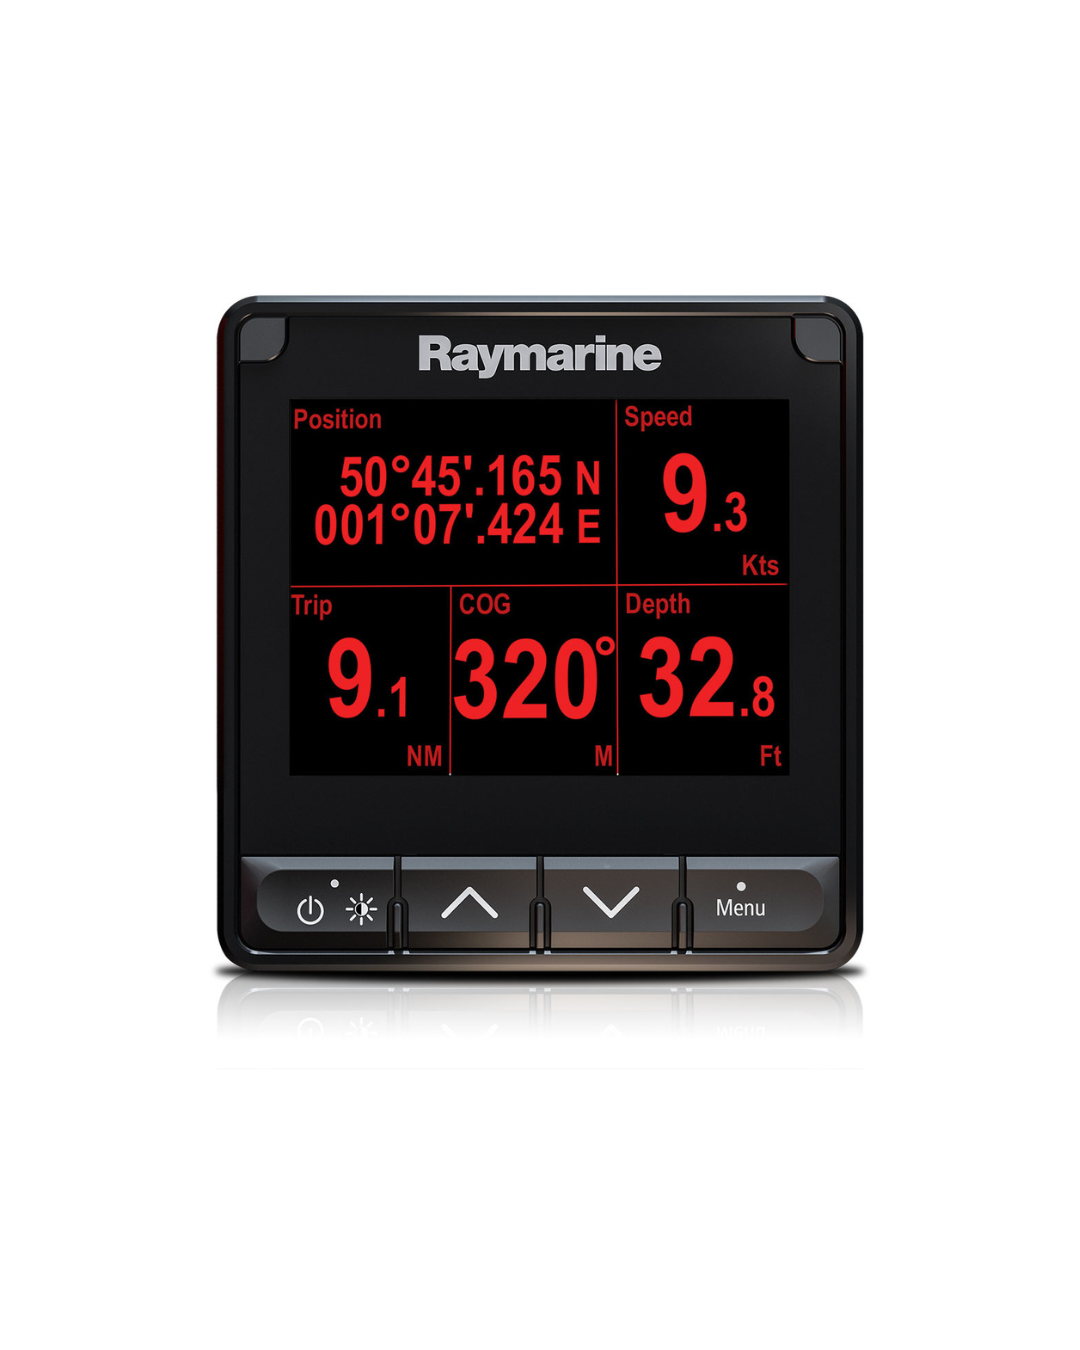 Raymarine i70s Multifunktionsinstrument Display mit Positionsanzeige, Speed, Trip, COG und Depth